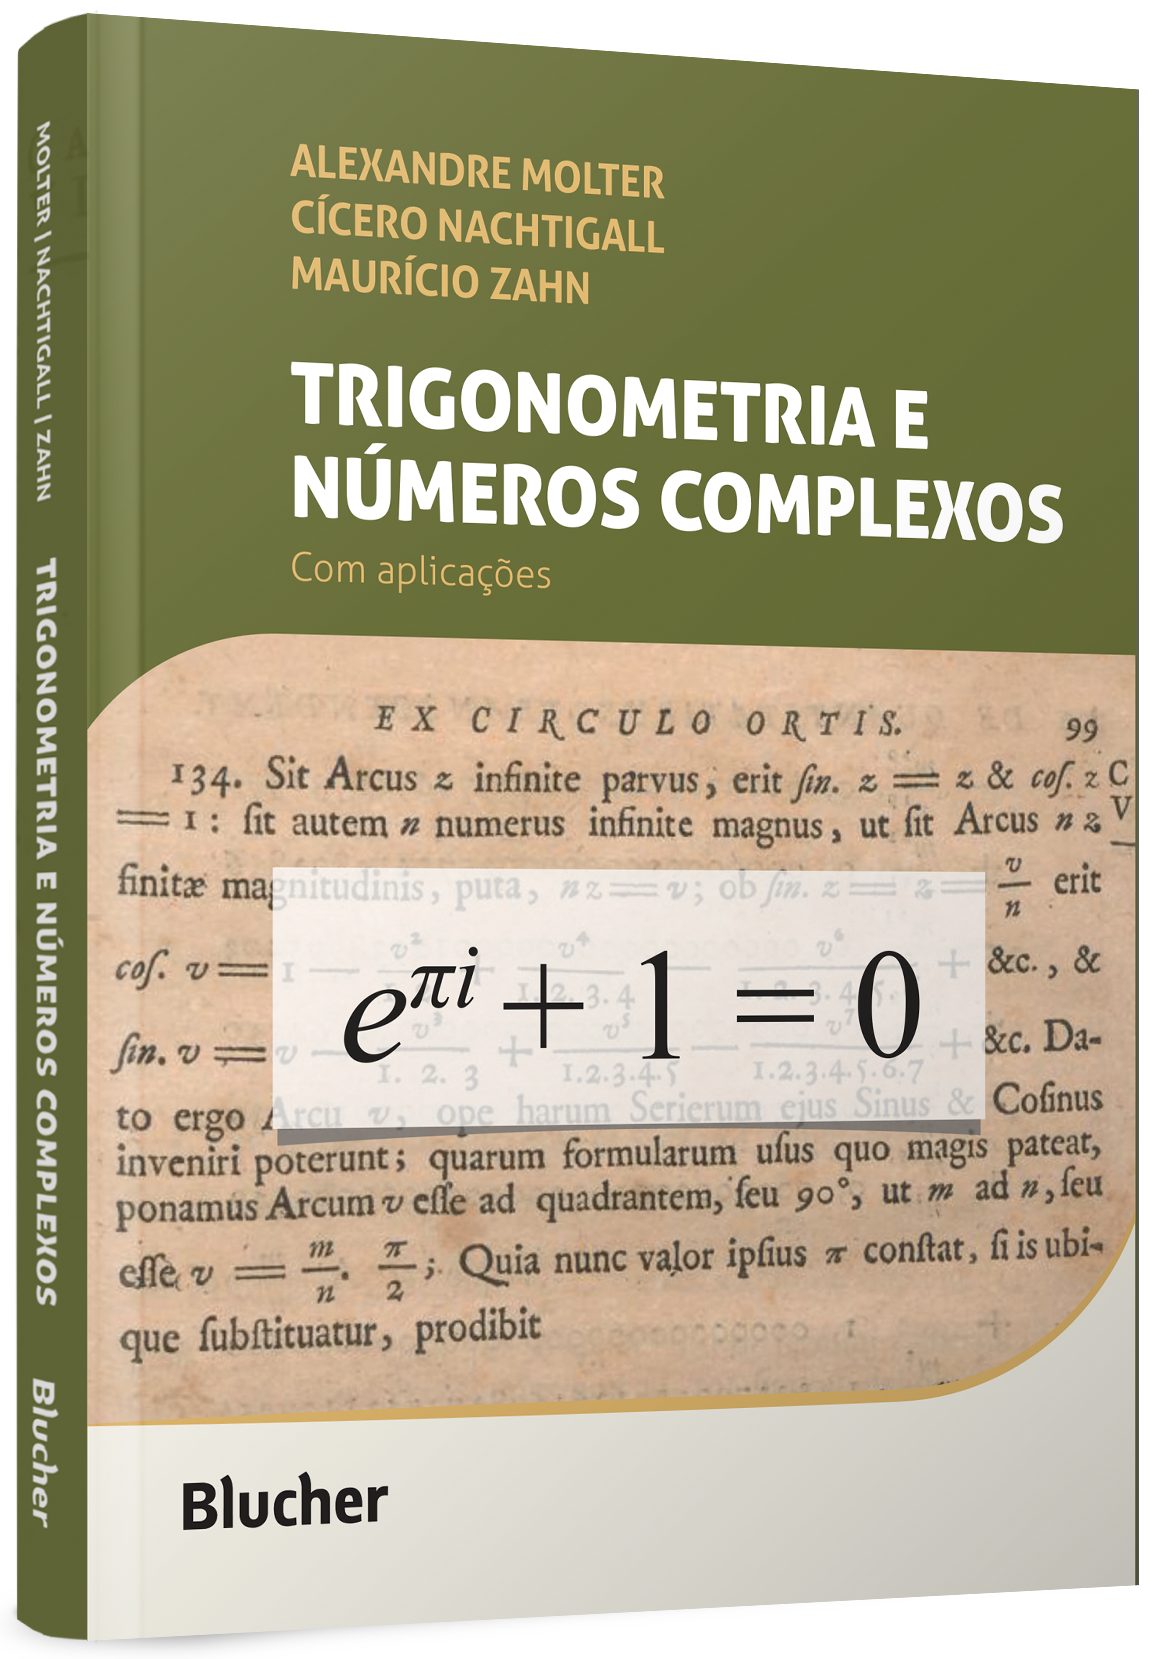 Trigonometria e números complexos